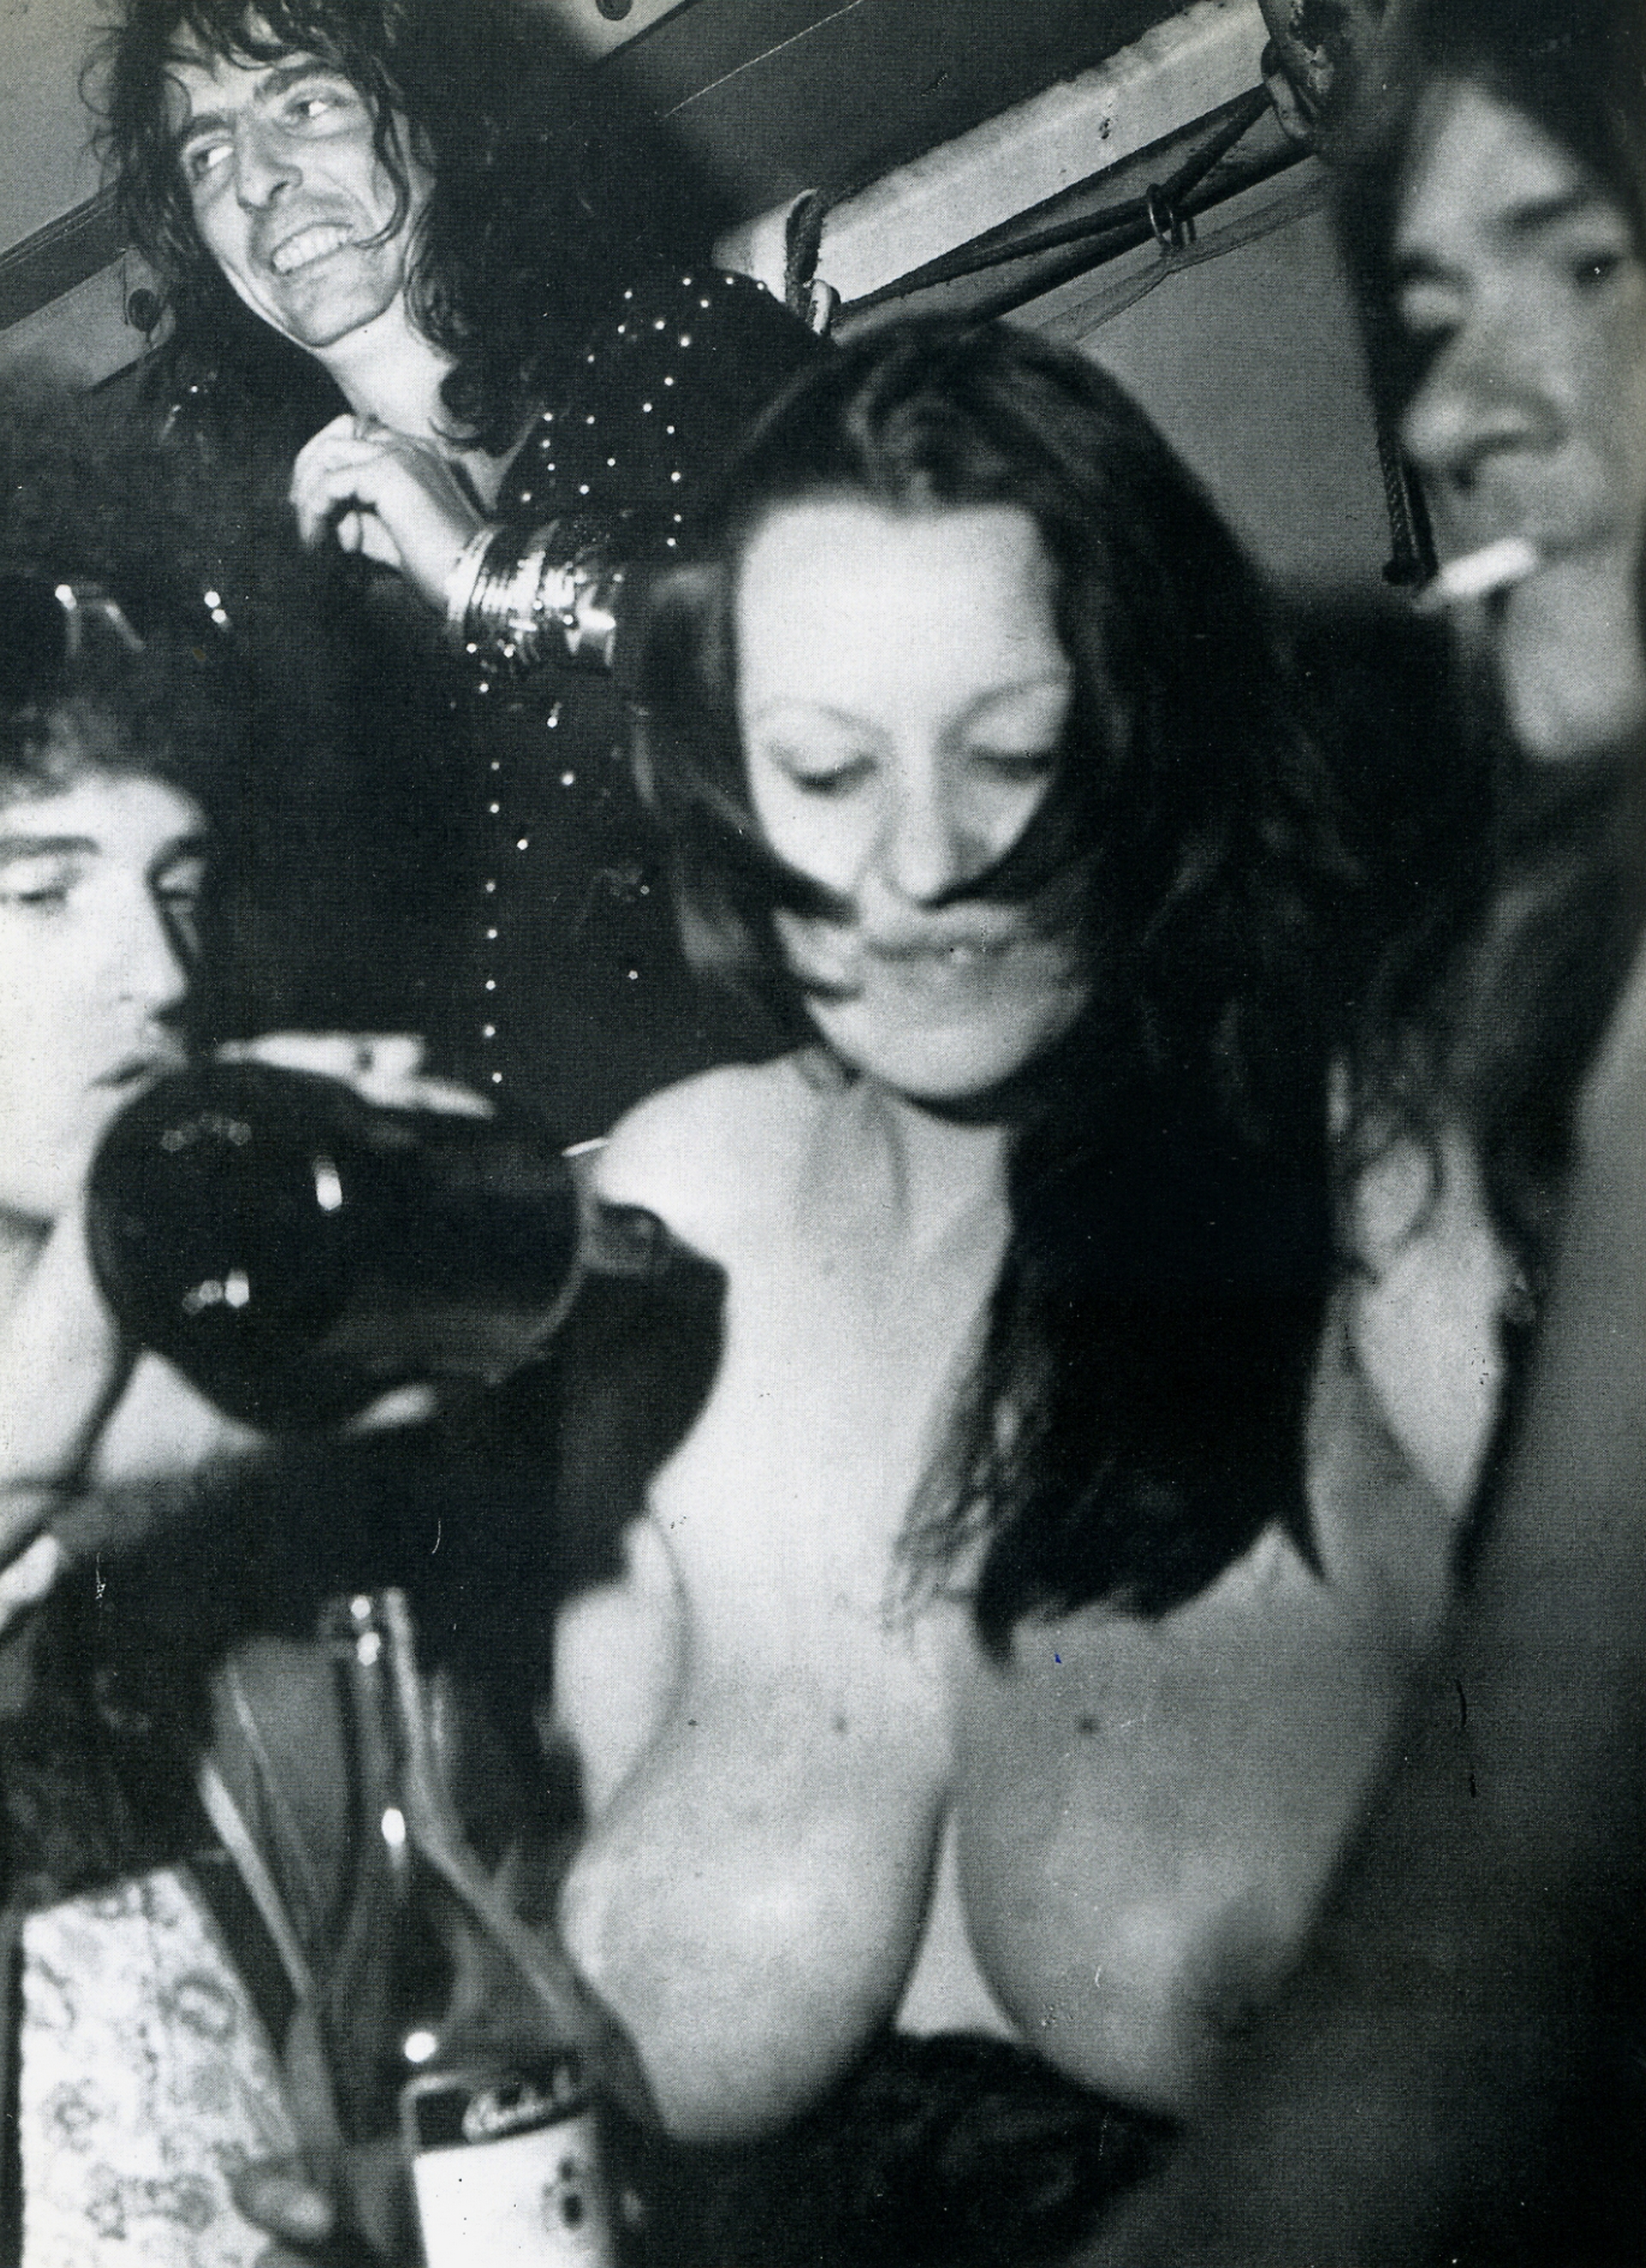 Και ο Alice Cooper χαρούμενος που το αλκοόλ ρέει πάνω σε γυναίκεια στήθη (Rex Feautures)